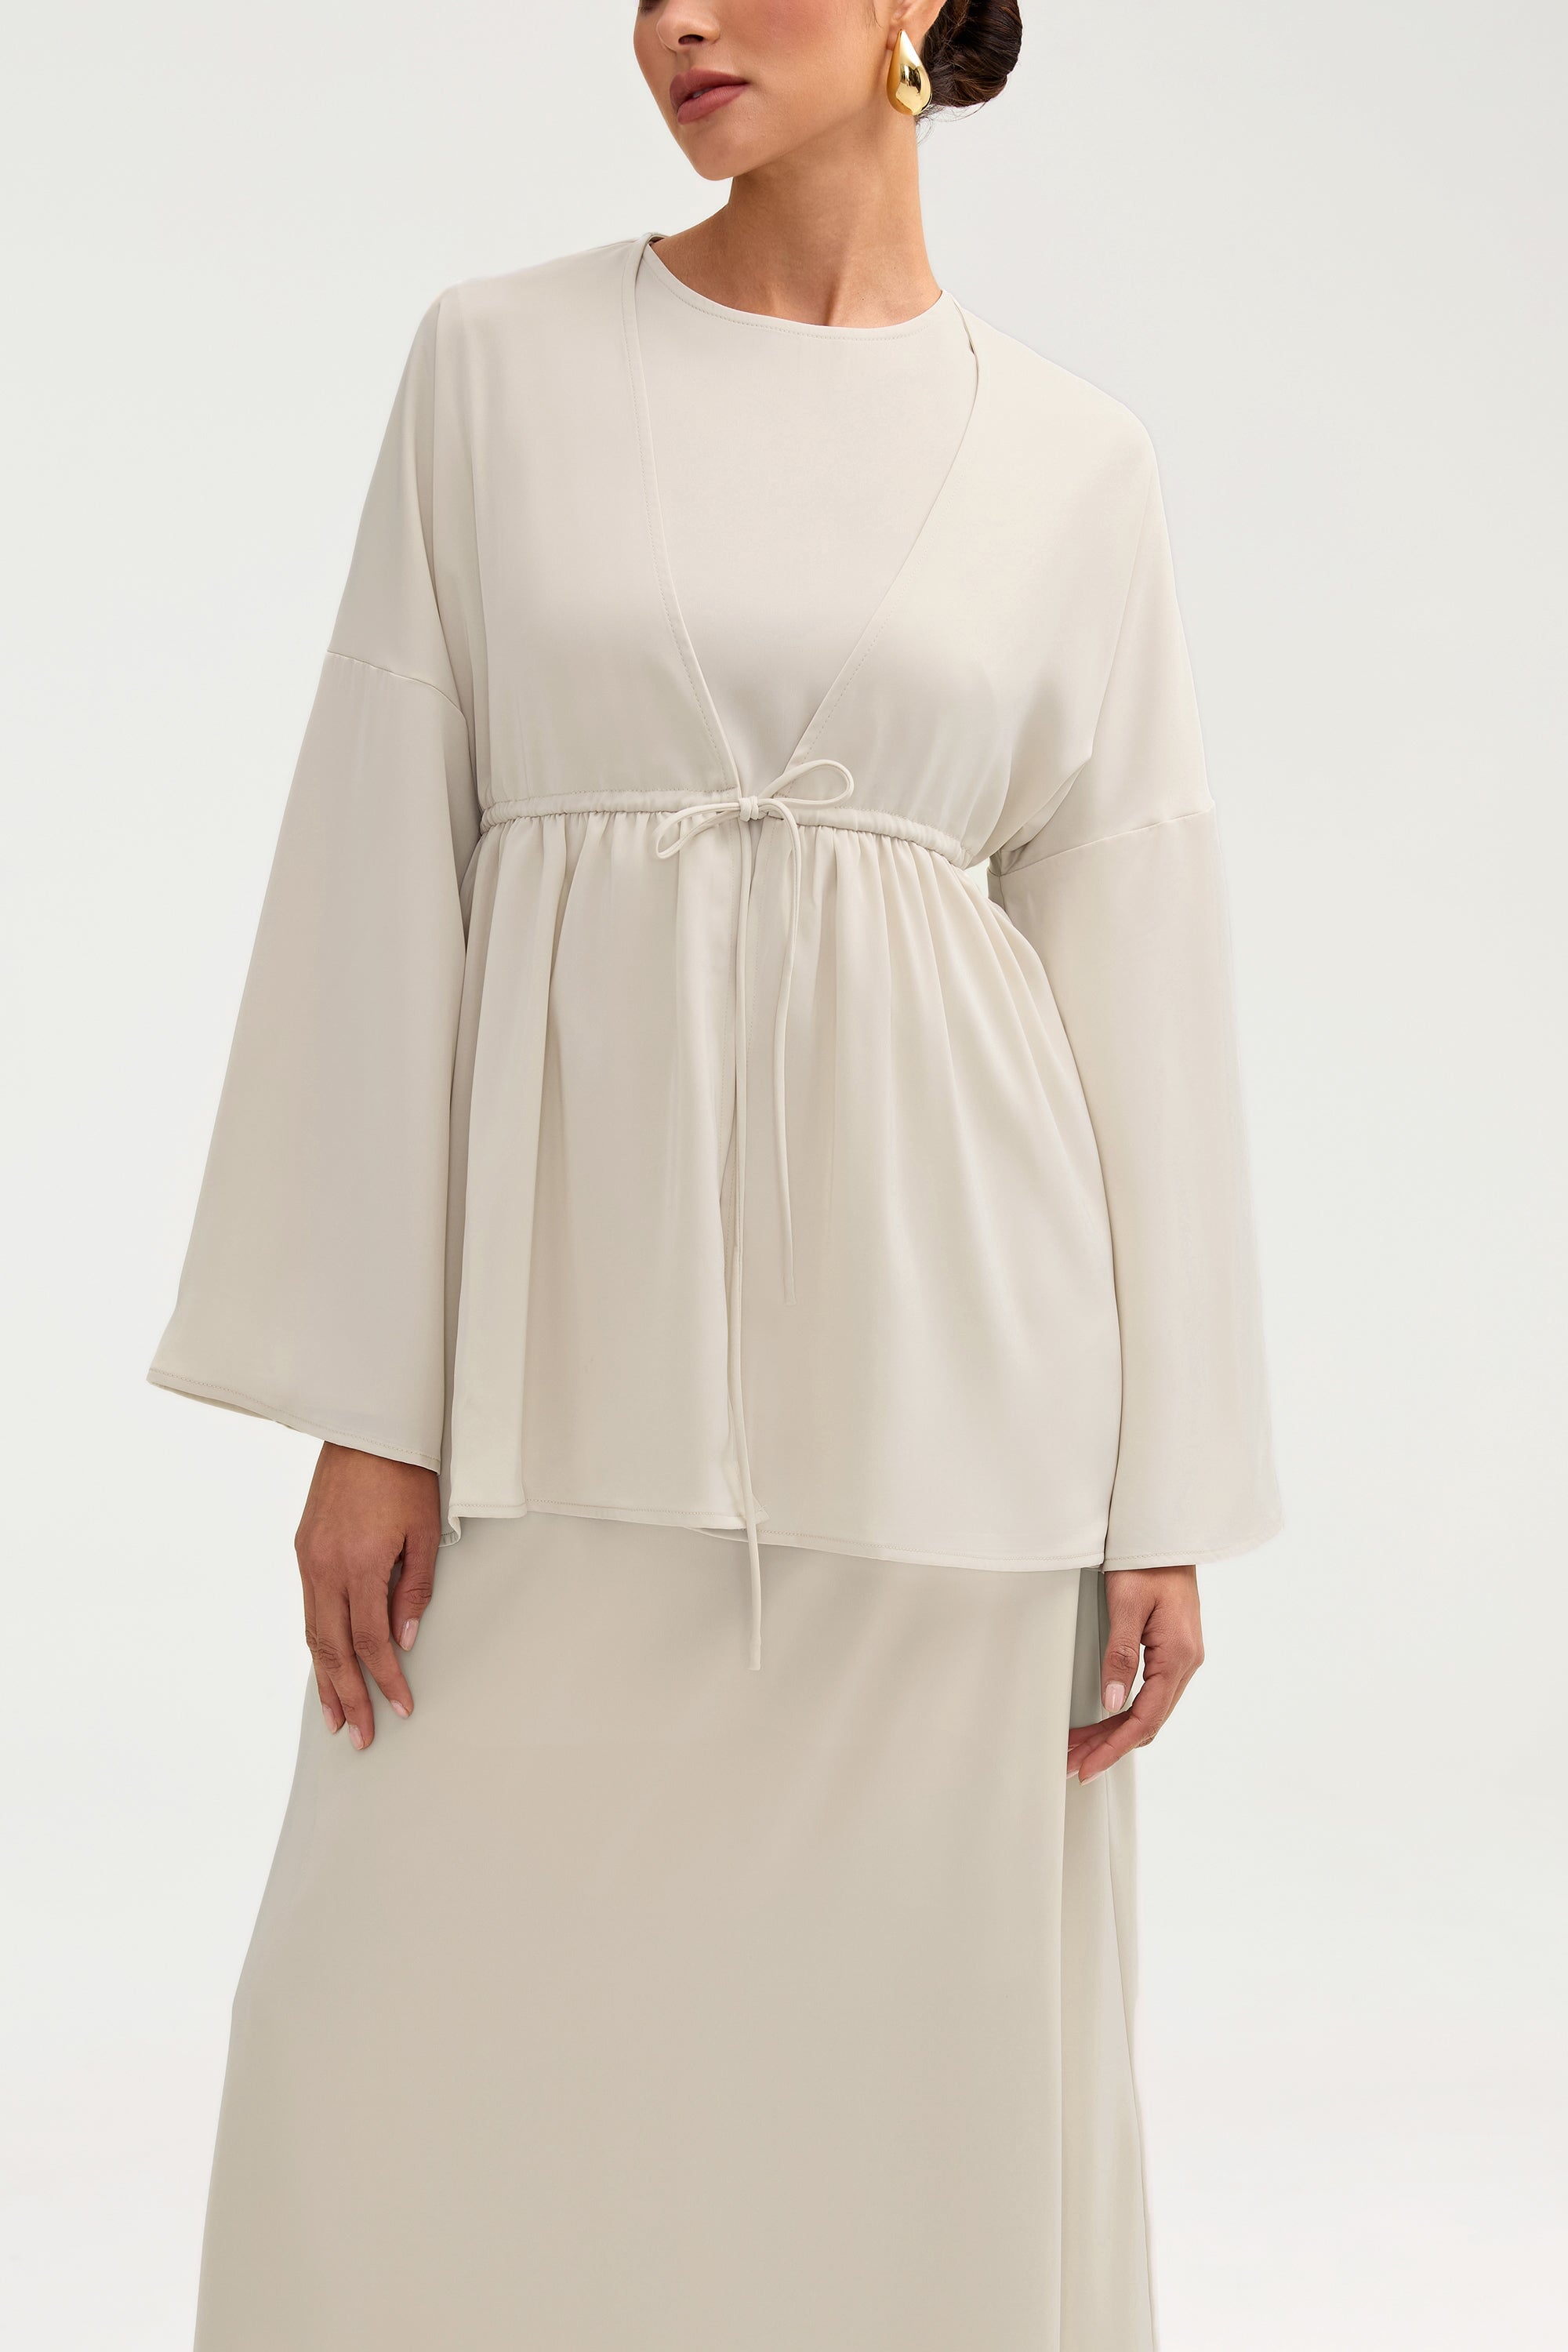 Samia Satin Tie Front Top - Stone Clothing Veiled 